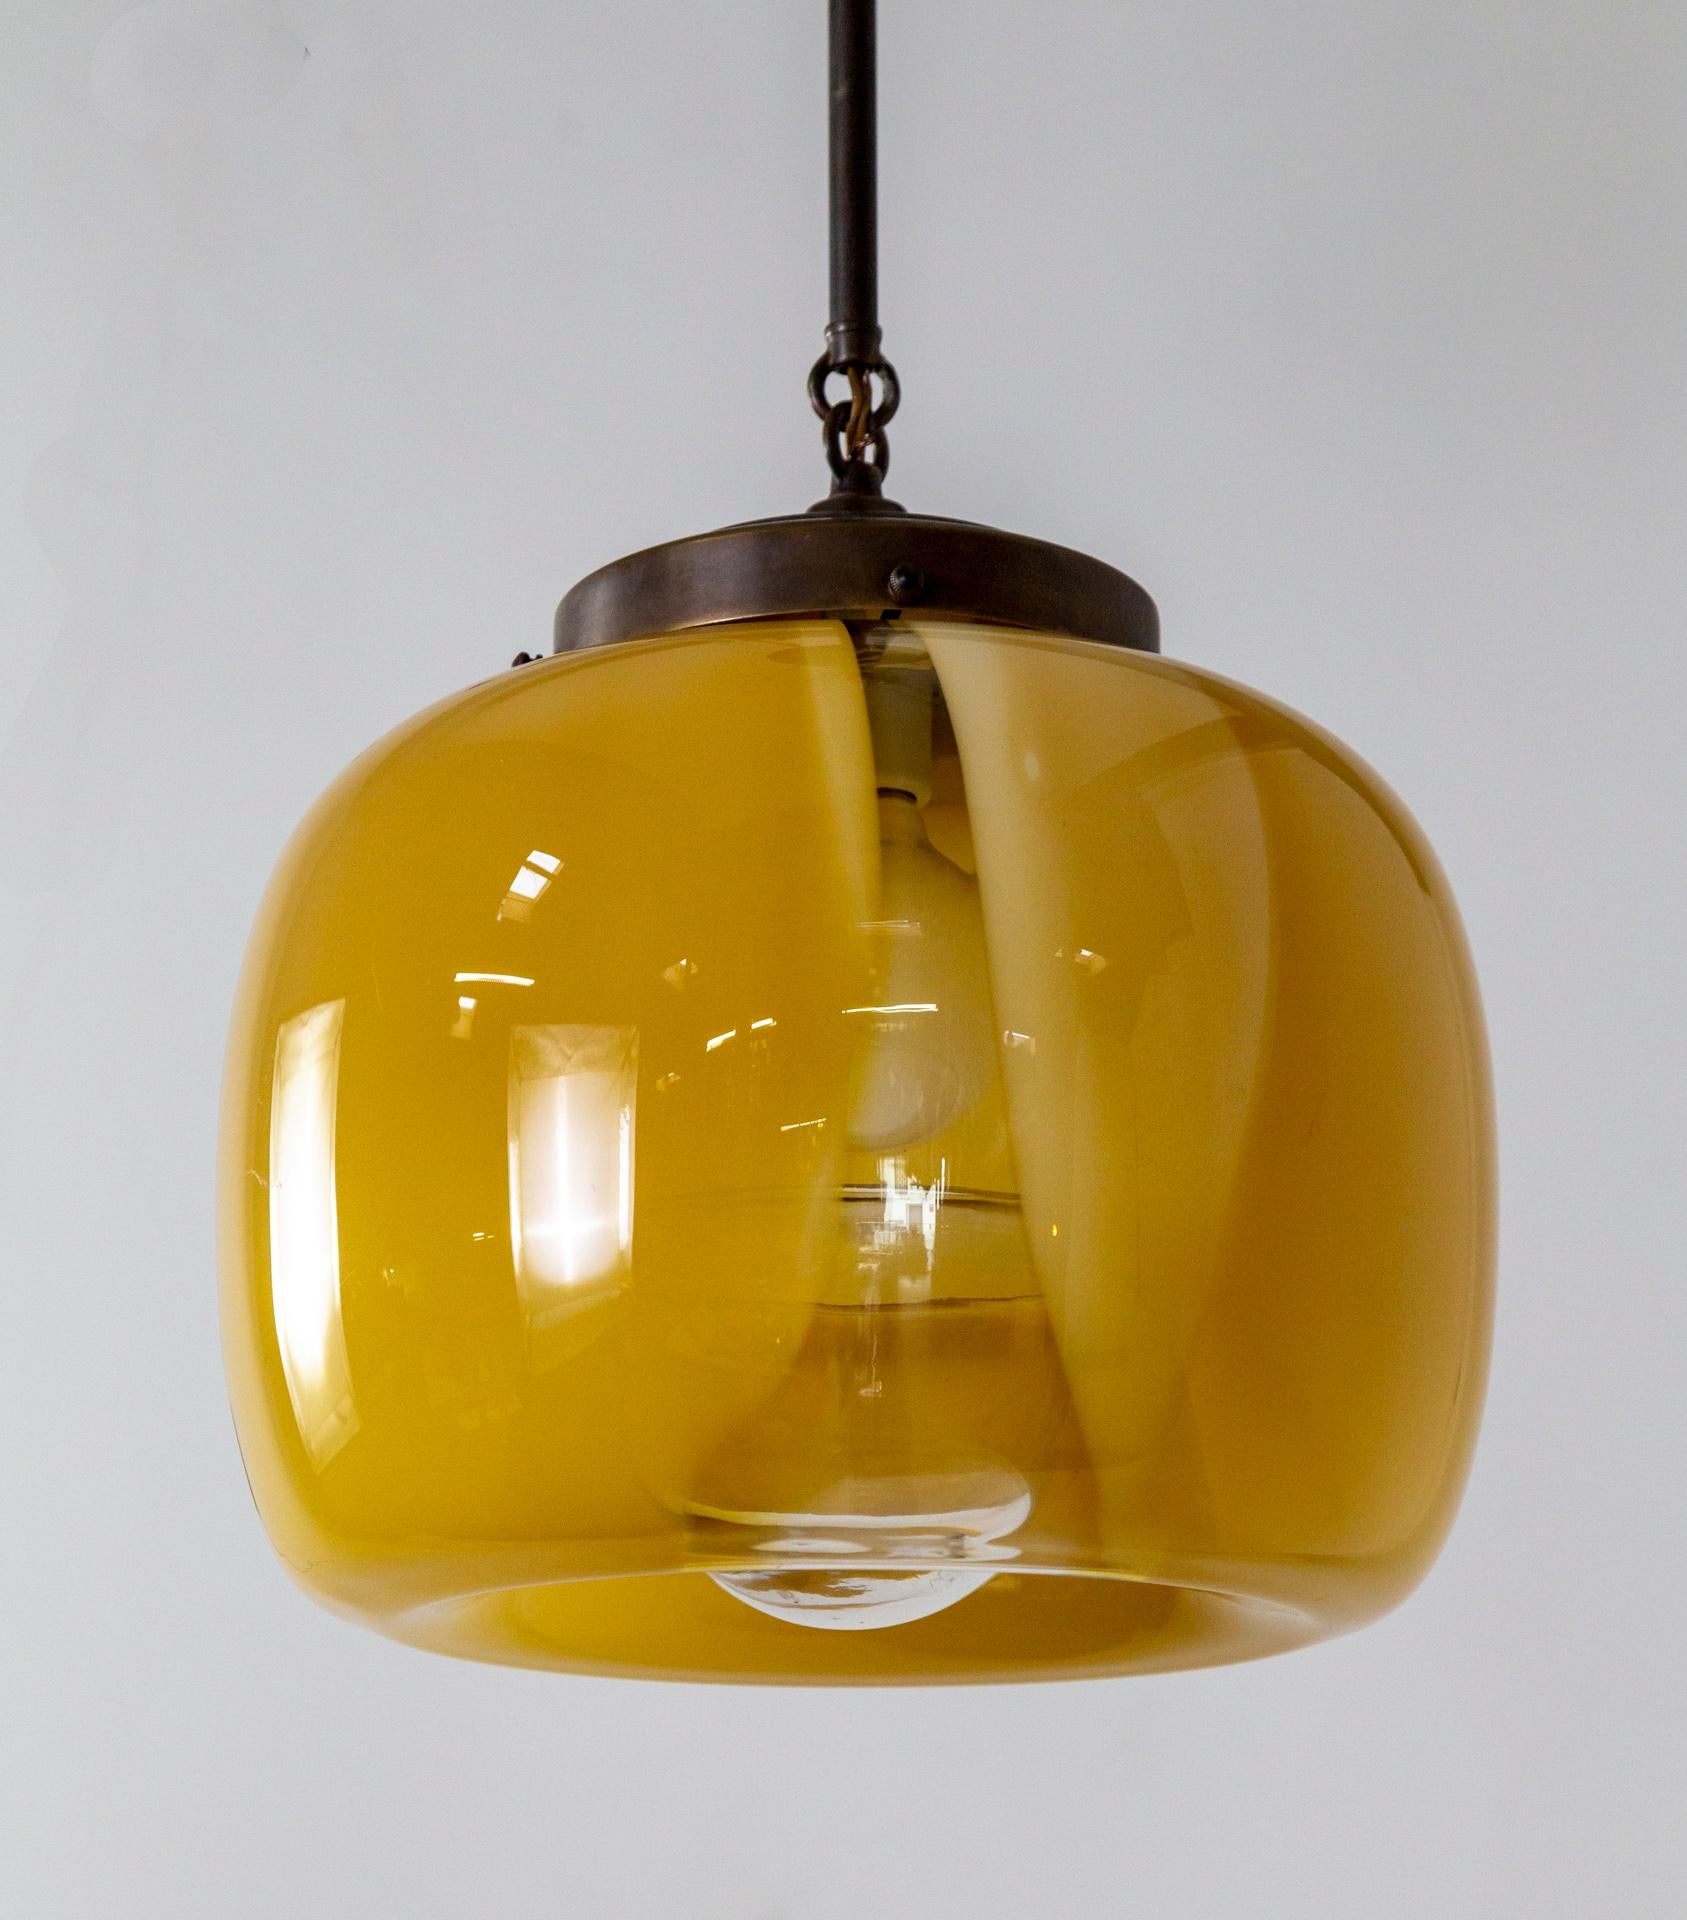 Pendelleuchte mit komplexem, mundgeblasenem Murano-Glasschirm in milchig-gelber Farbe mit einem klaren Streifen, der das Innere offenbart.  Der Baldachin, der Stiel und die Schirmhalterung sind aus bronzefarbenem Messing.  Hergestellt in den 1970er